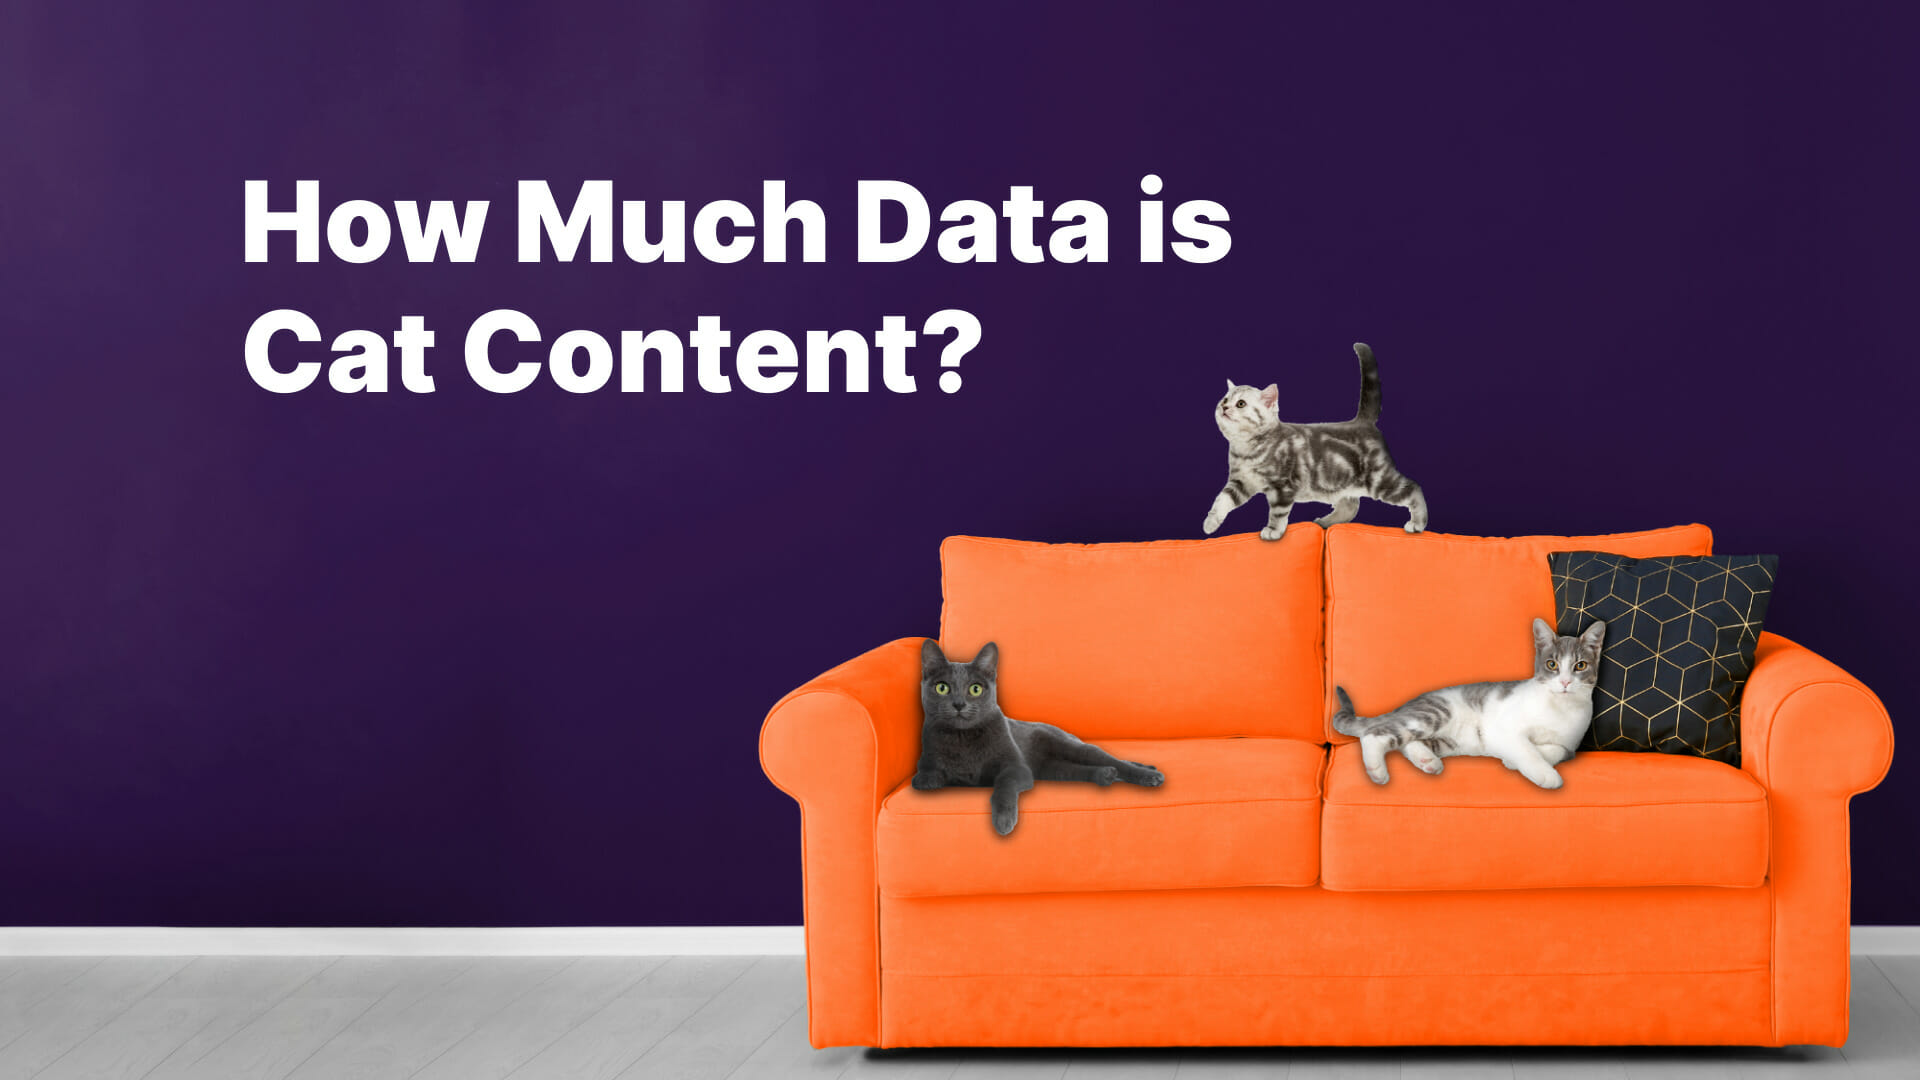 Data Is Cat Content